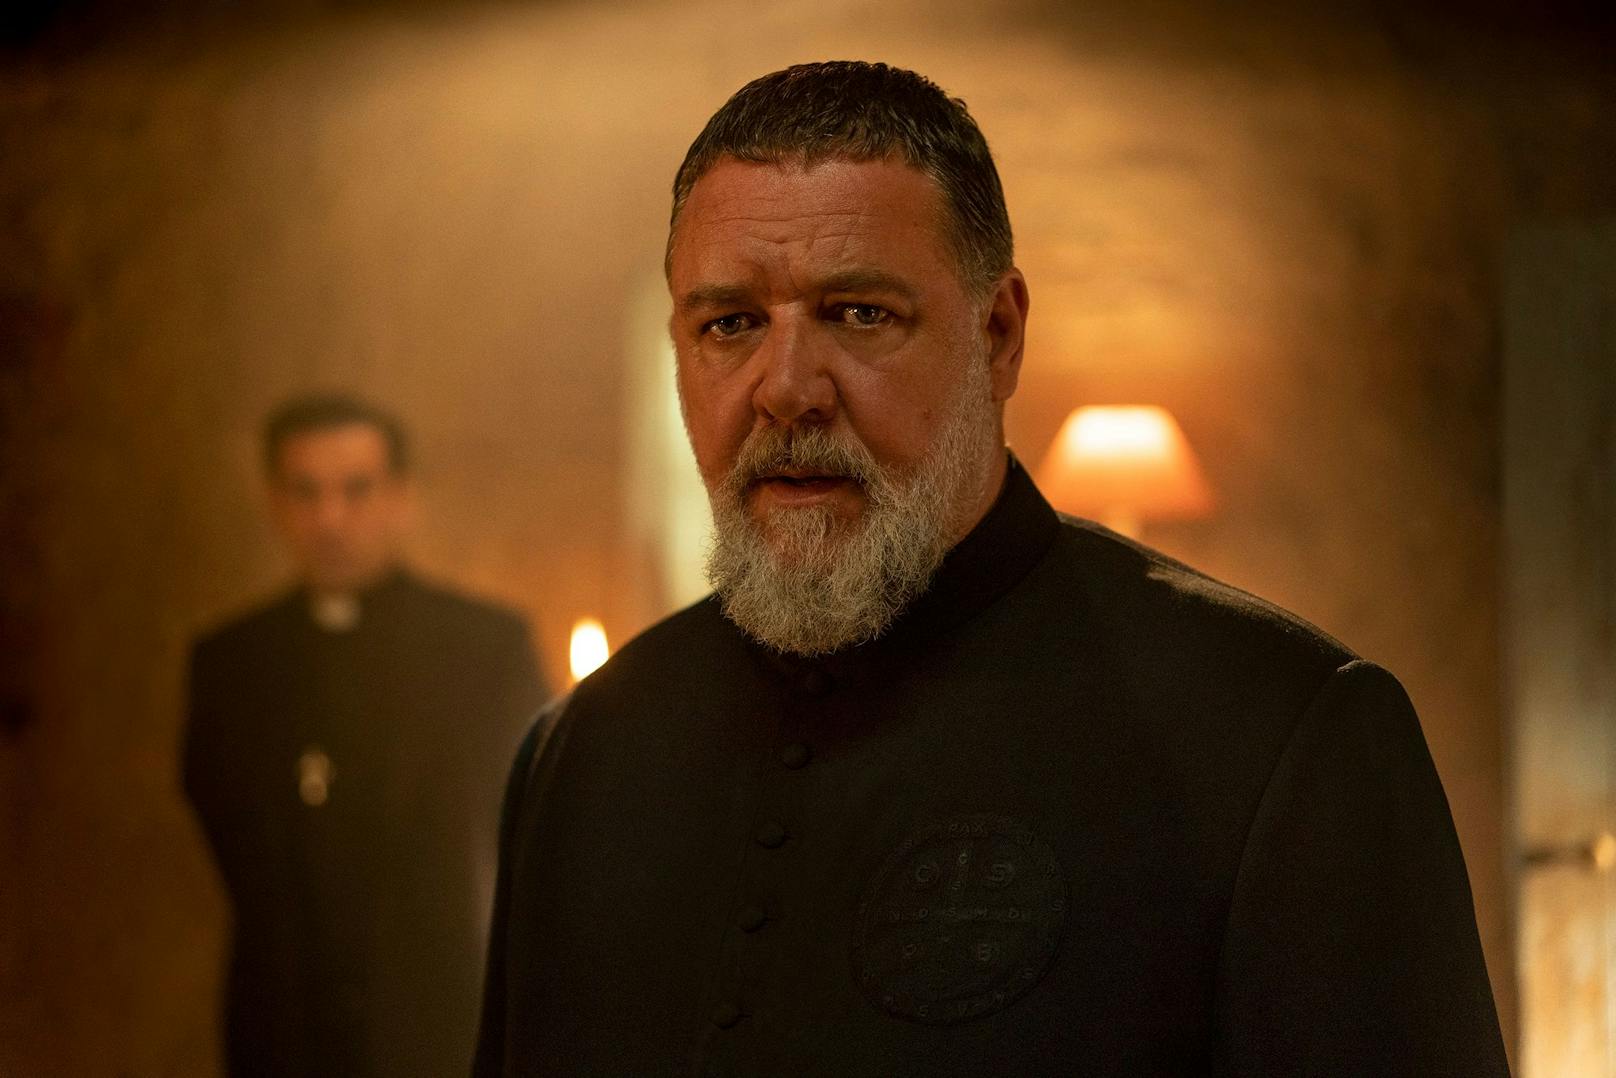 Gabriele Amorth (gespielt von Russell Crowe) ist der Chef-Exorzist des Vatikans:&nbsp; Im Film "The Pope's Exorcist" geht er einem besonders schaurigen Fall nach.